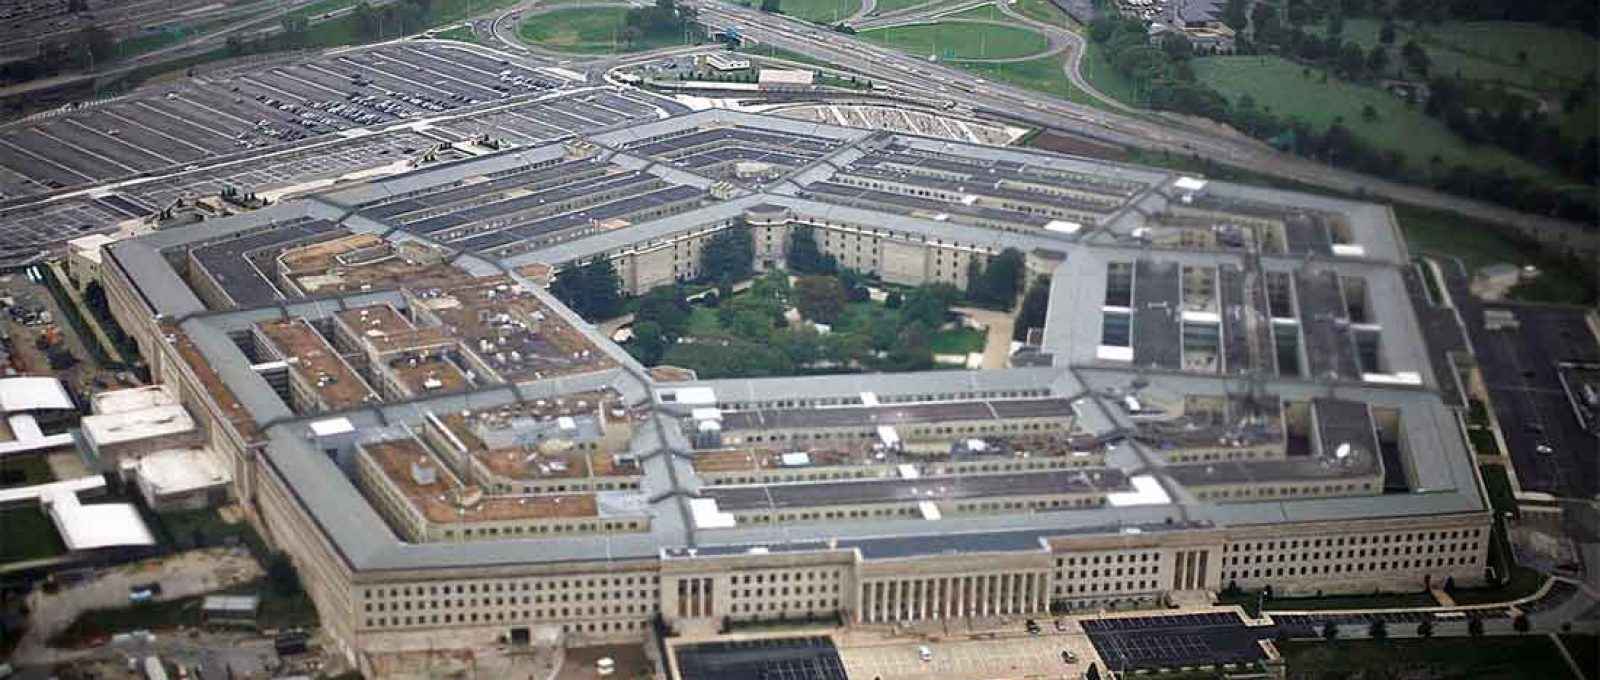 Vista aérea da sede militar dos Estados Unidos, o Pentágono, em 28 de setembro de 2008 (Foto: Jason Reed/Reuters).